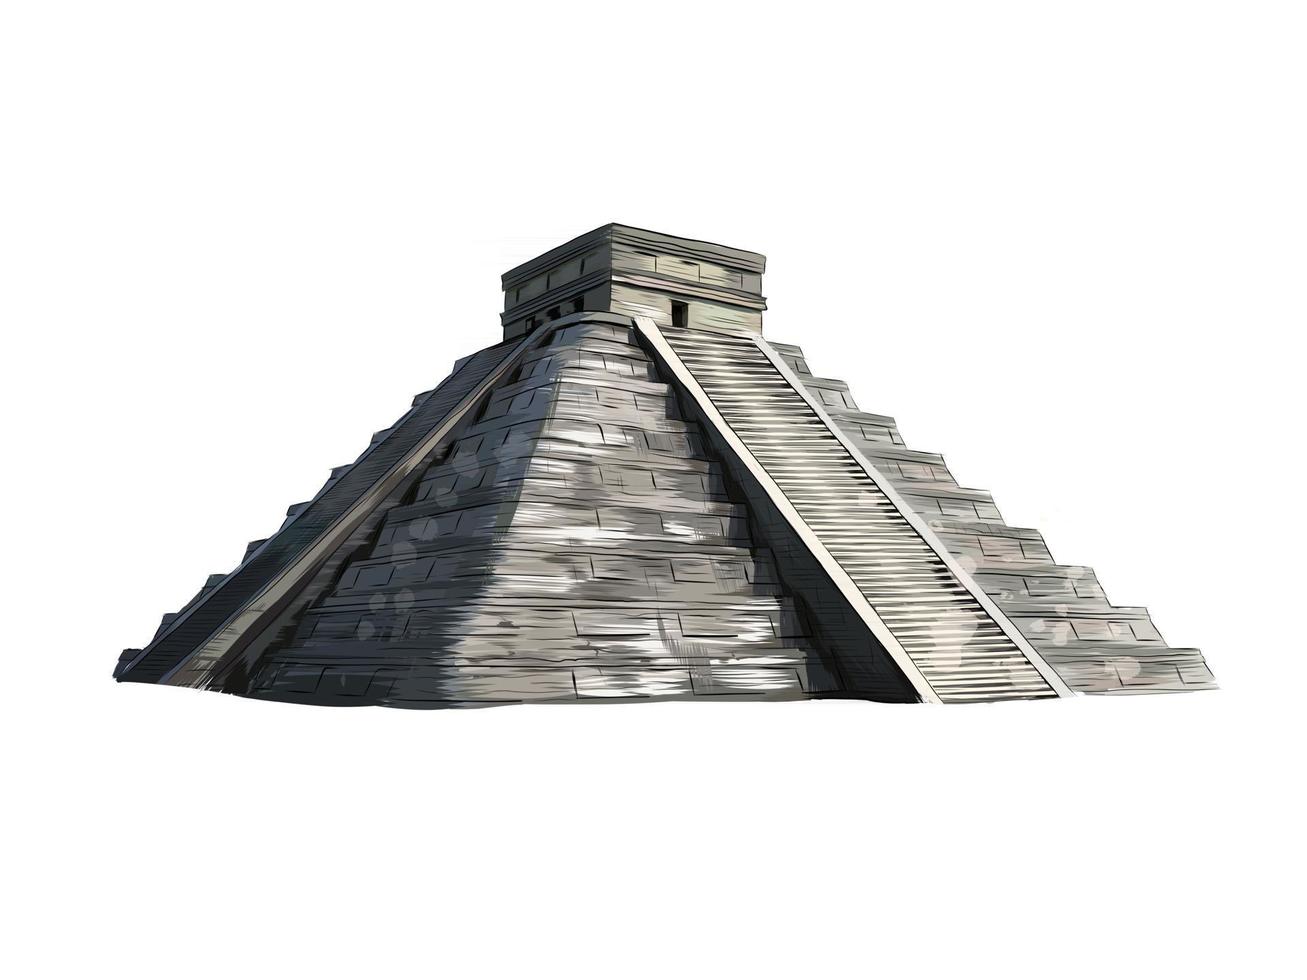 templo de kukulkán, pirámide en chichén itzá, yucatán, méxico de un toque de acuarela, dibujo coloreado, realista. ilustración vectorial de pinturas vector